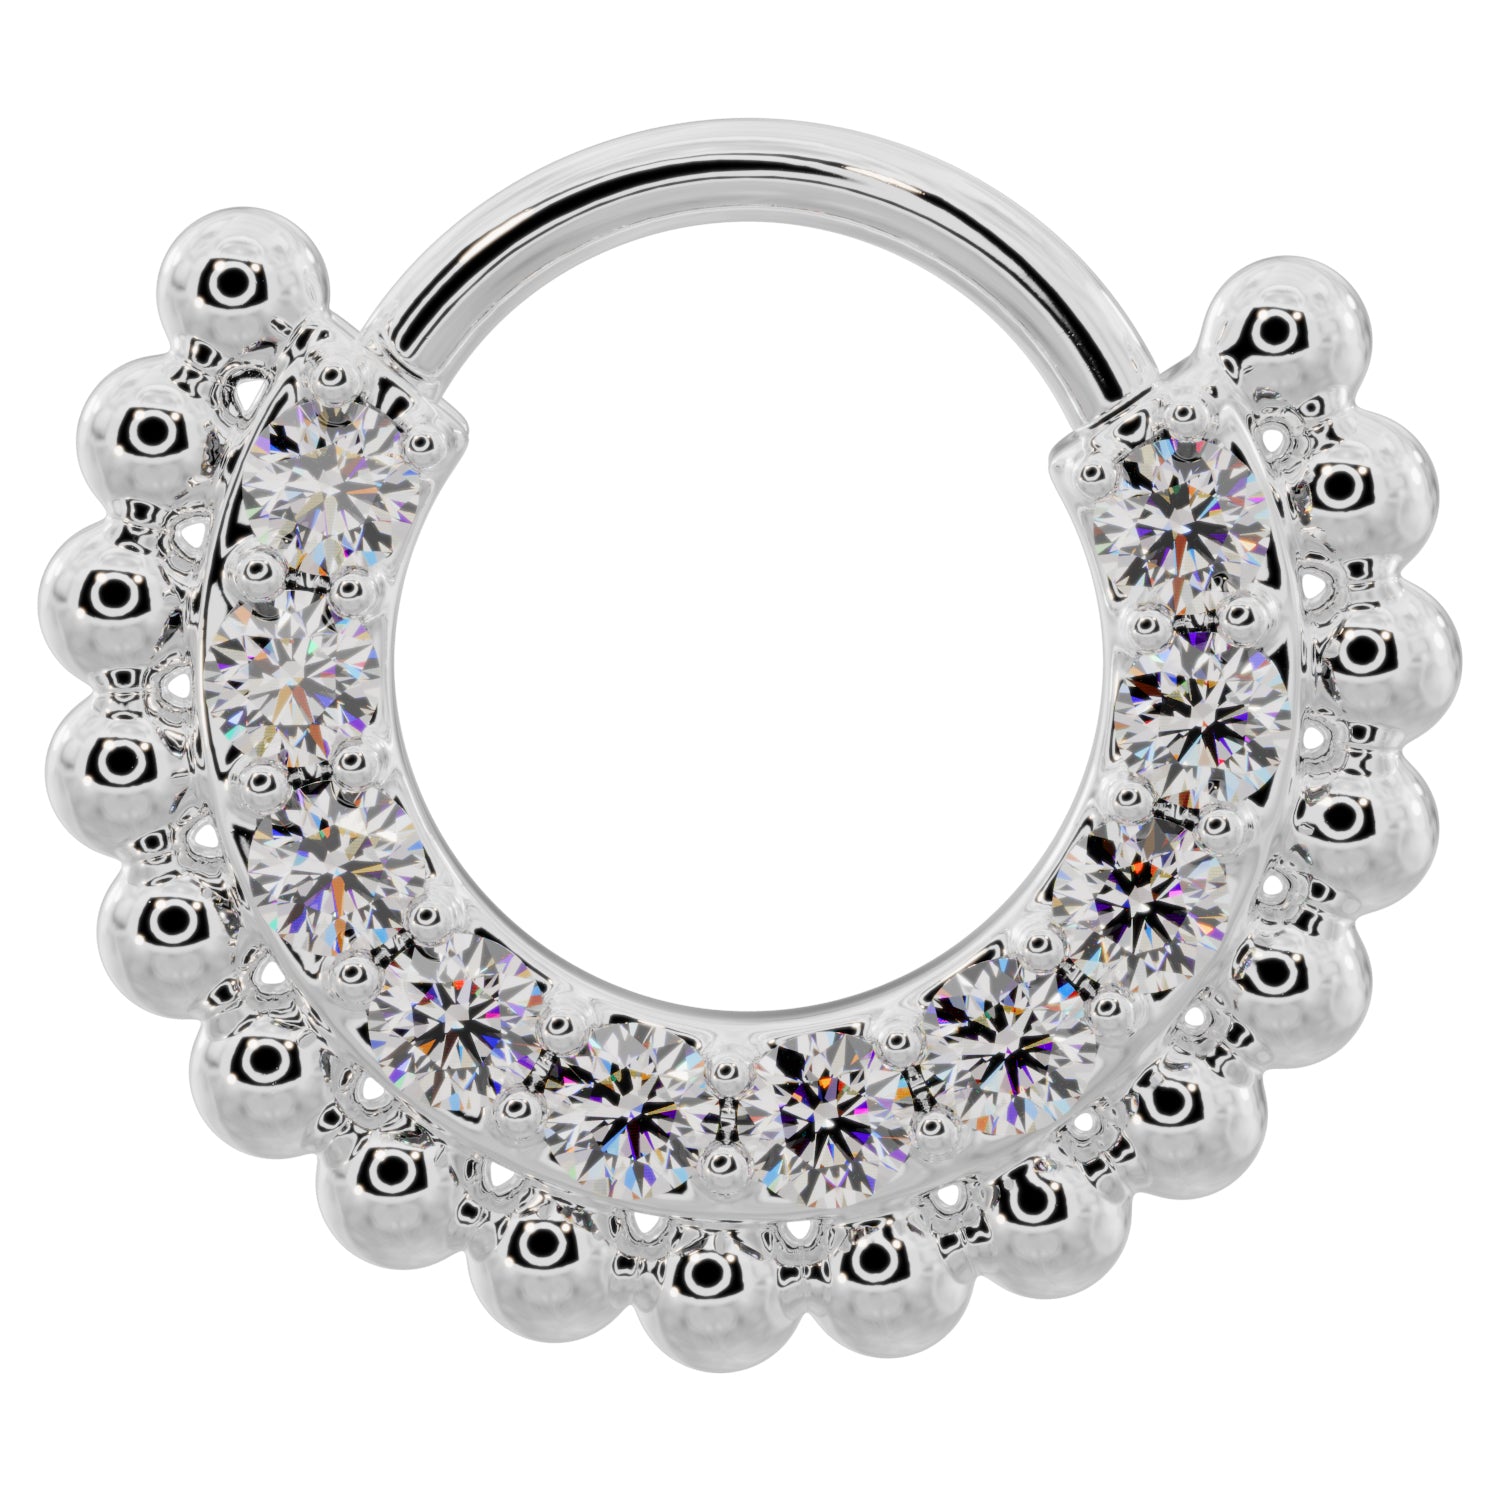 Diamond Beads 14k Gold Clicker Ring Hoop-14K White Gold   16G (1.2mm)   3 8